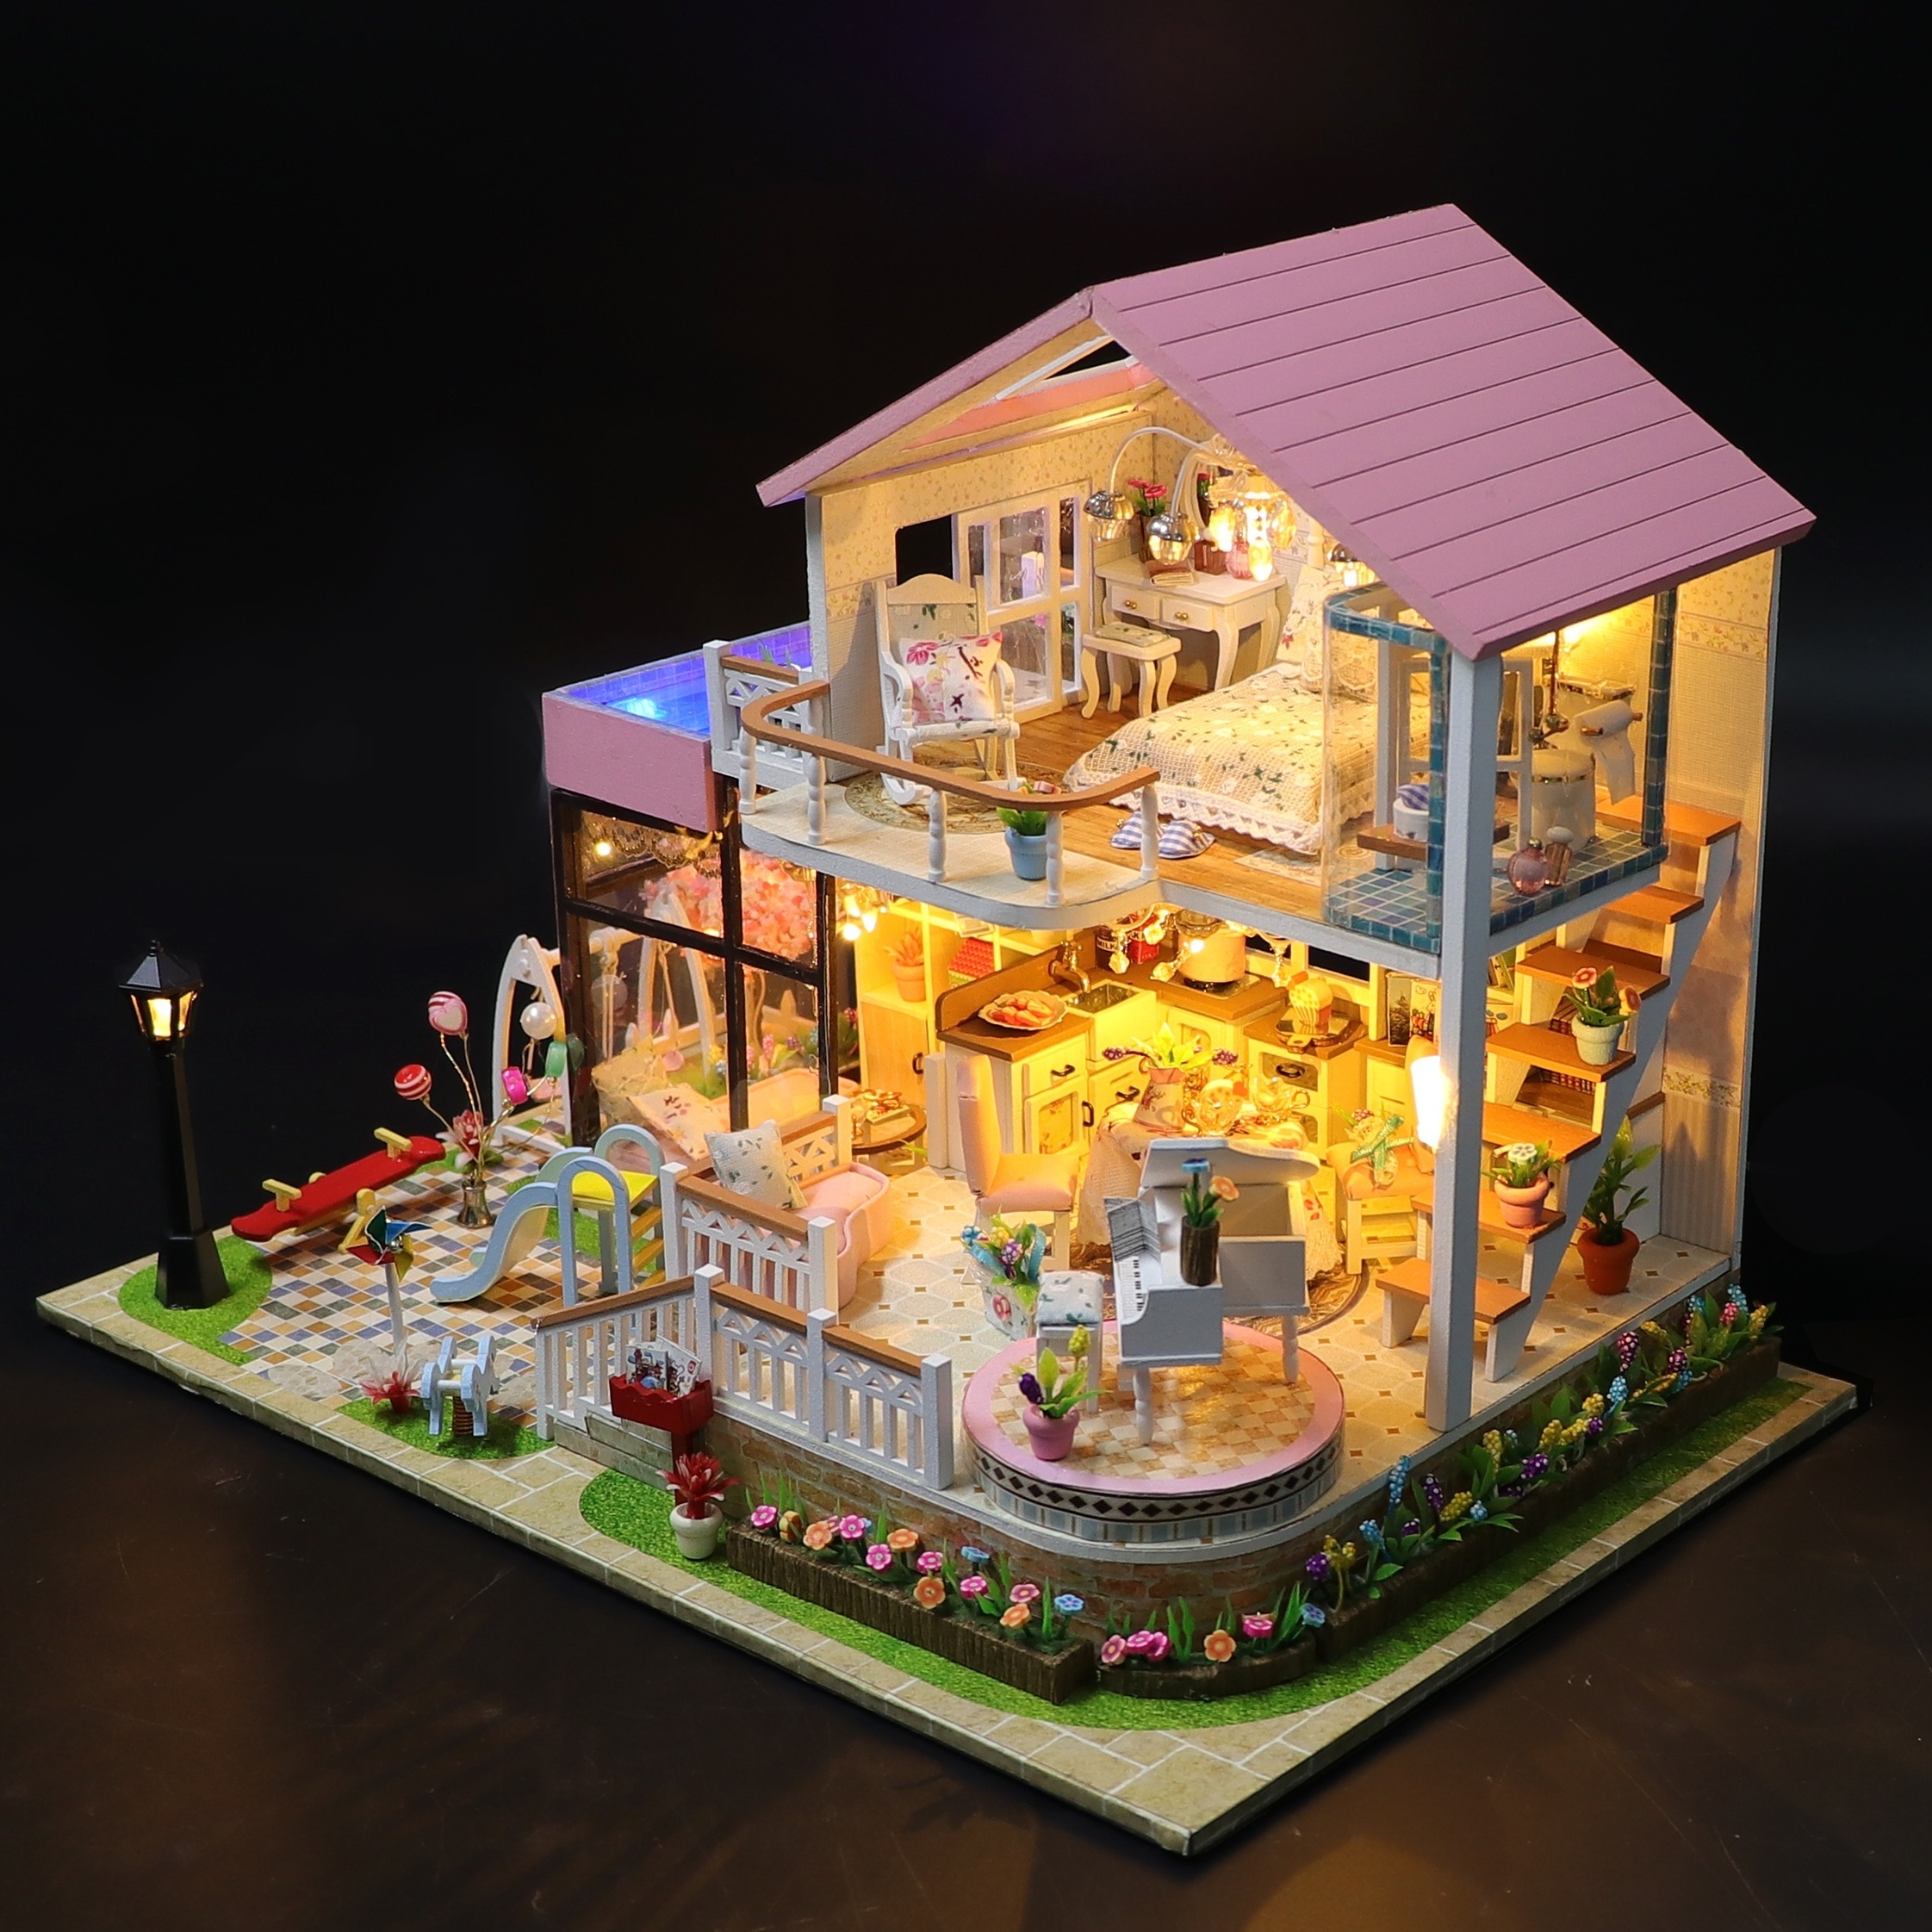 Kit de meubles de maison de poupée miniature bricolage, Kits de bricolage  miniatures pour adultes pour construire un modèle de petite maison